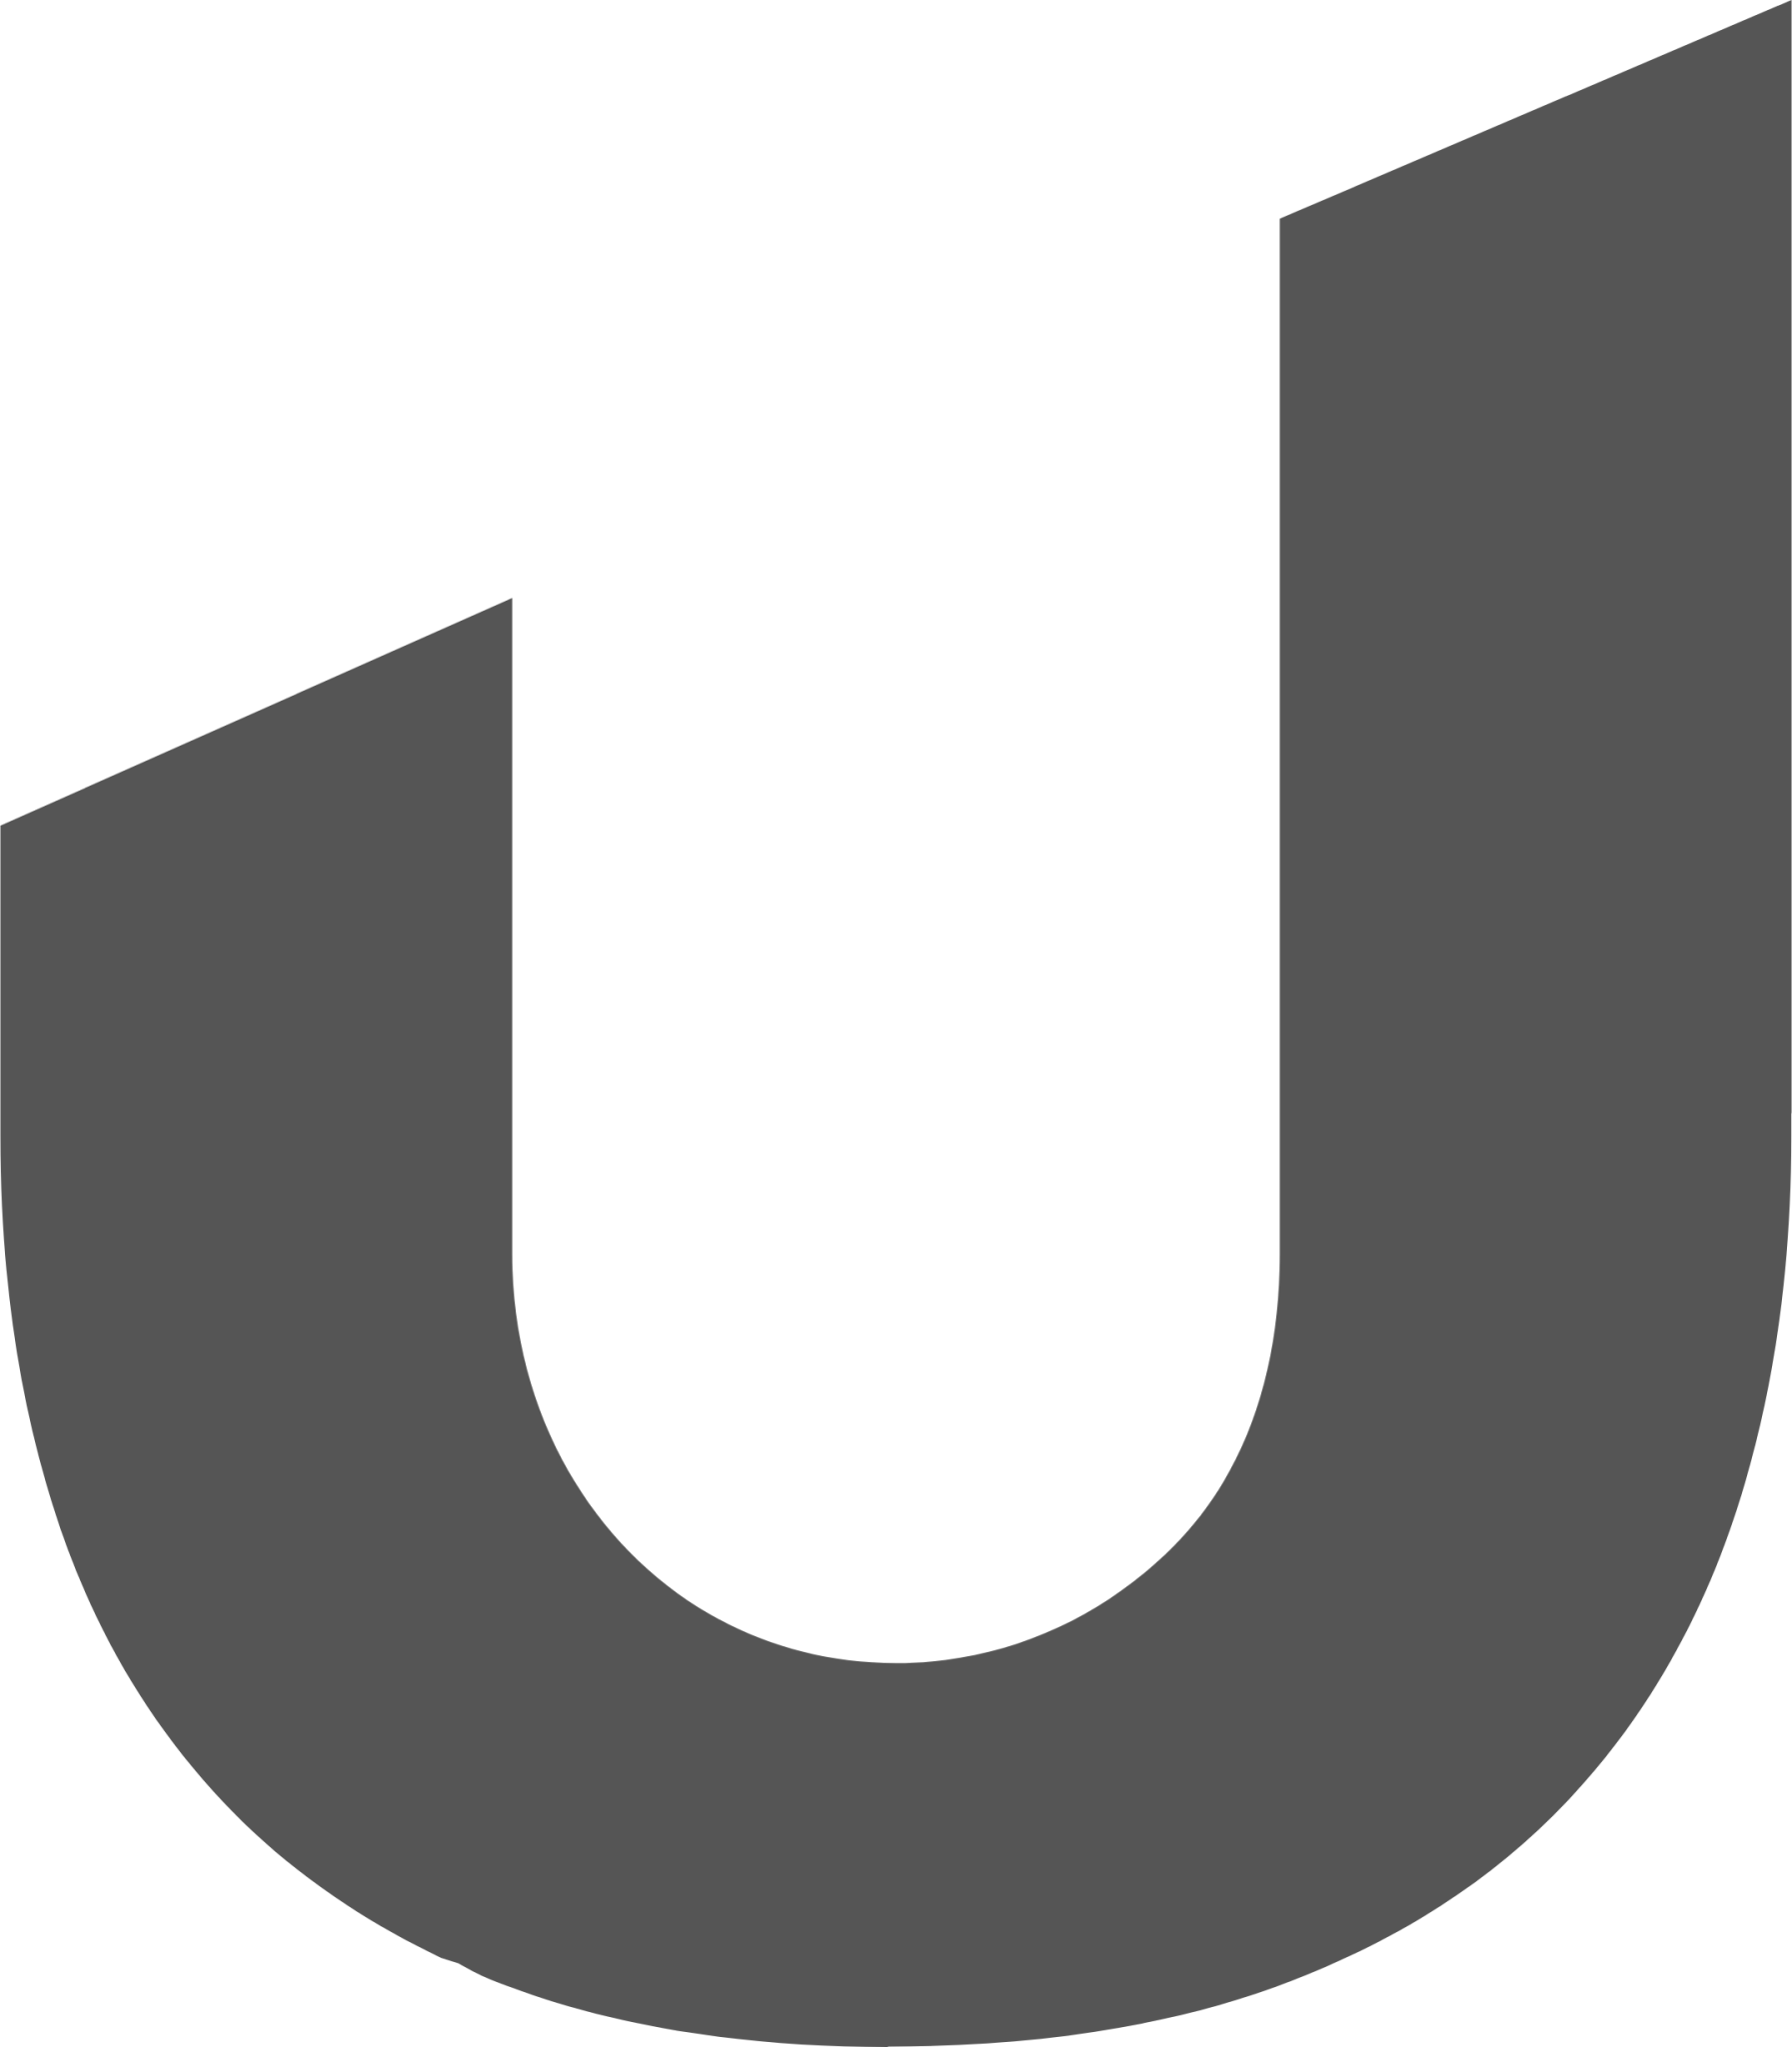 ulauncher indicator icon